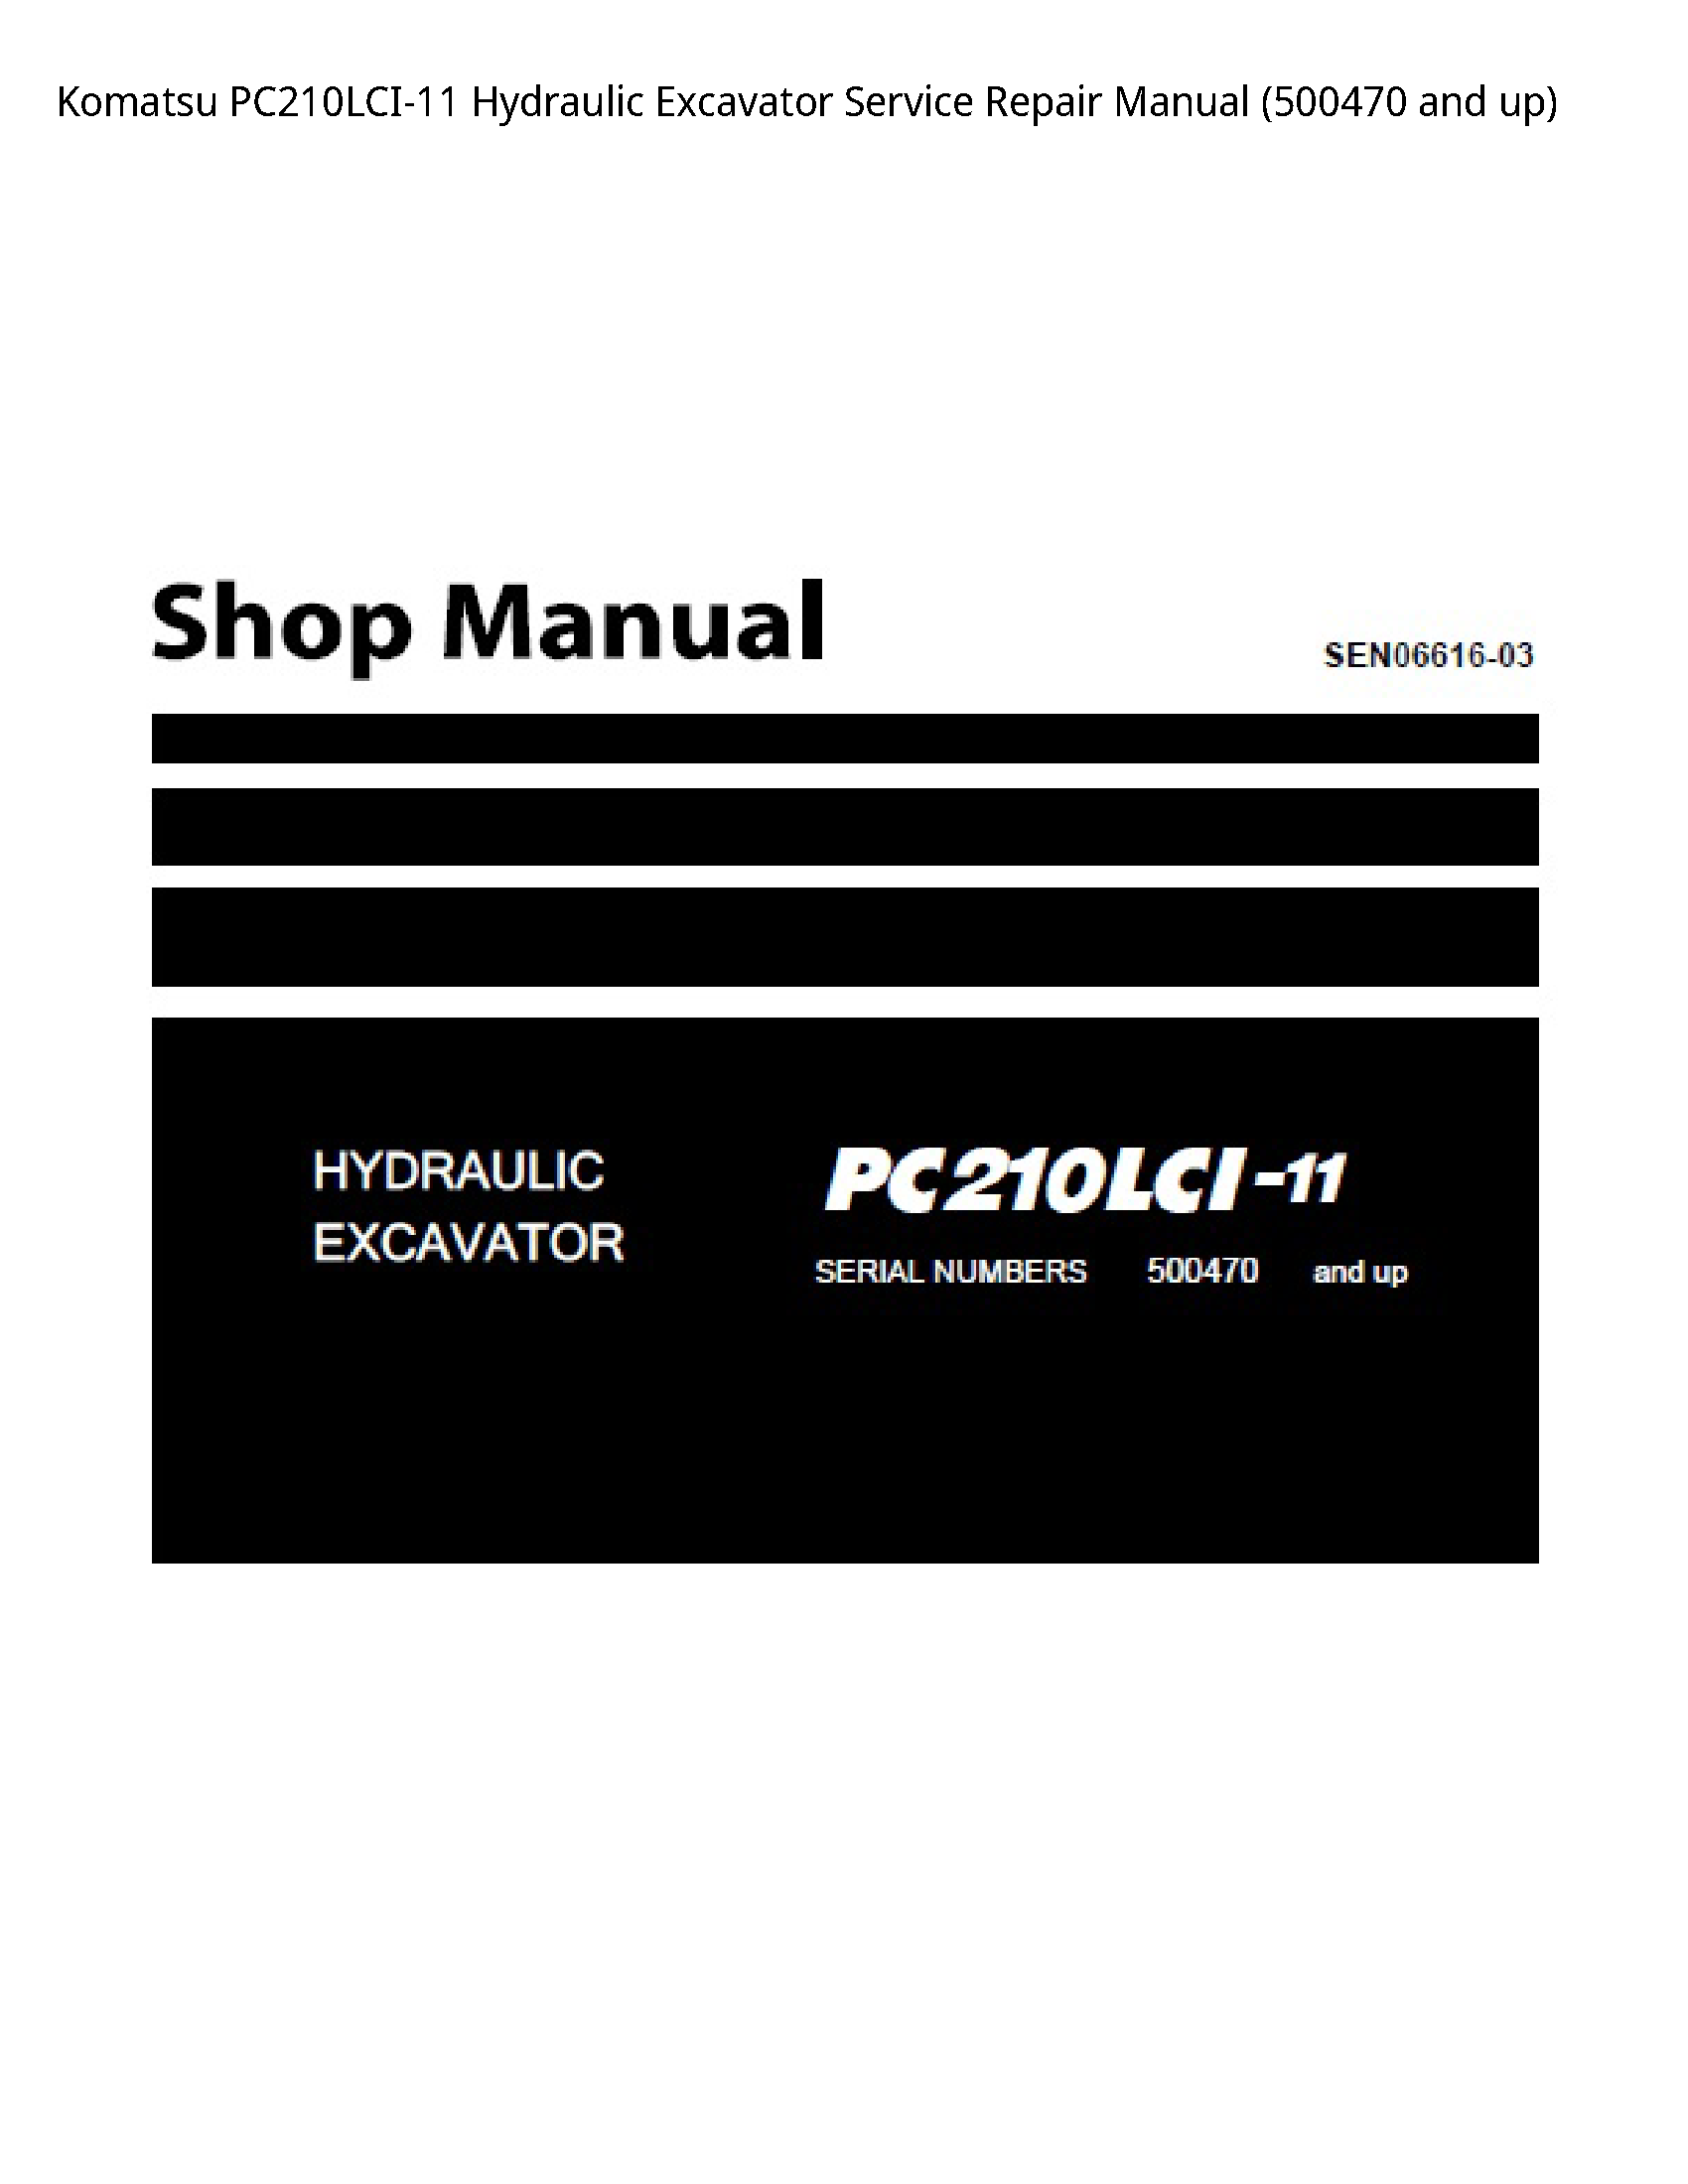 KOMATSU PC210LCI-11 Hydraulic Excavator manual